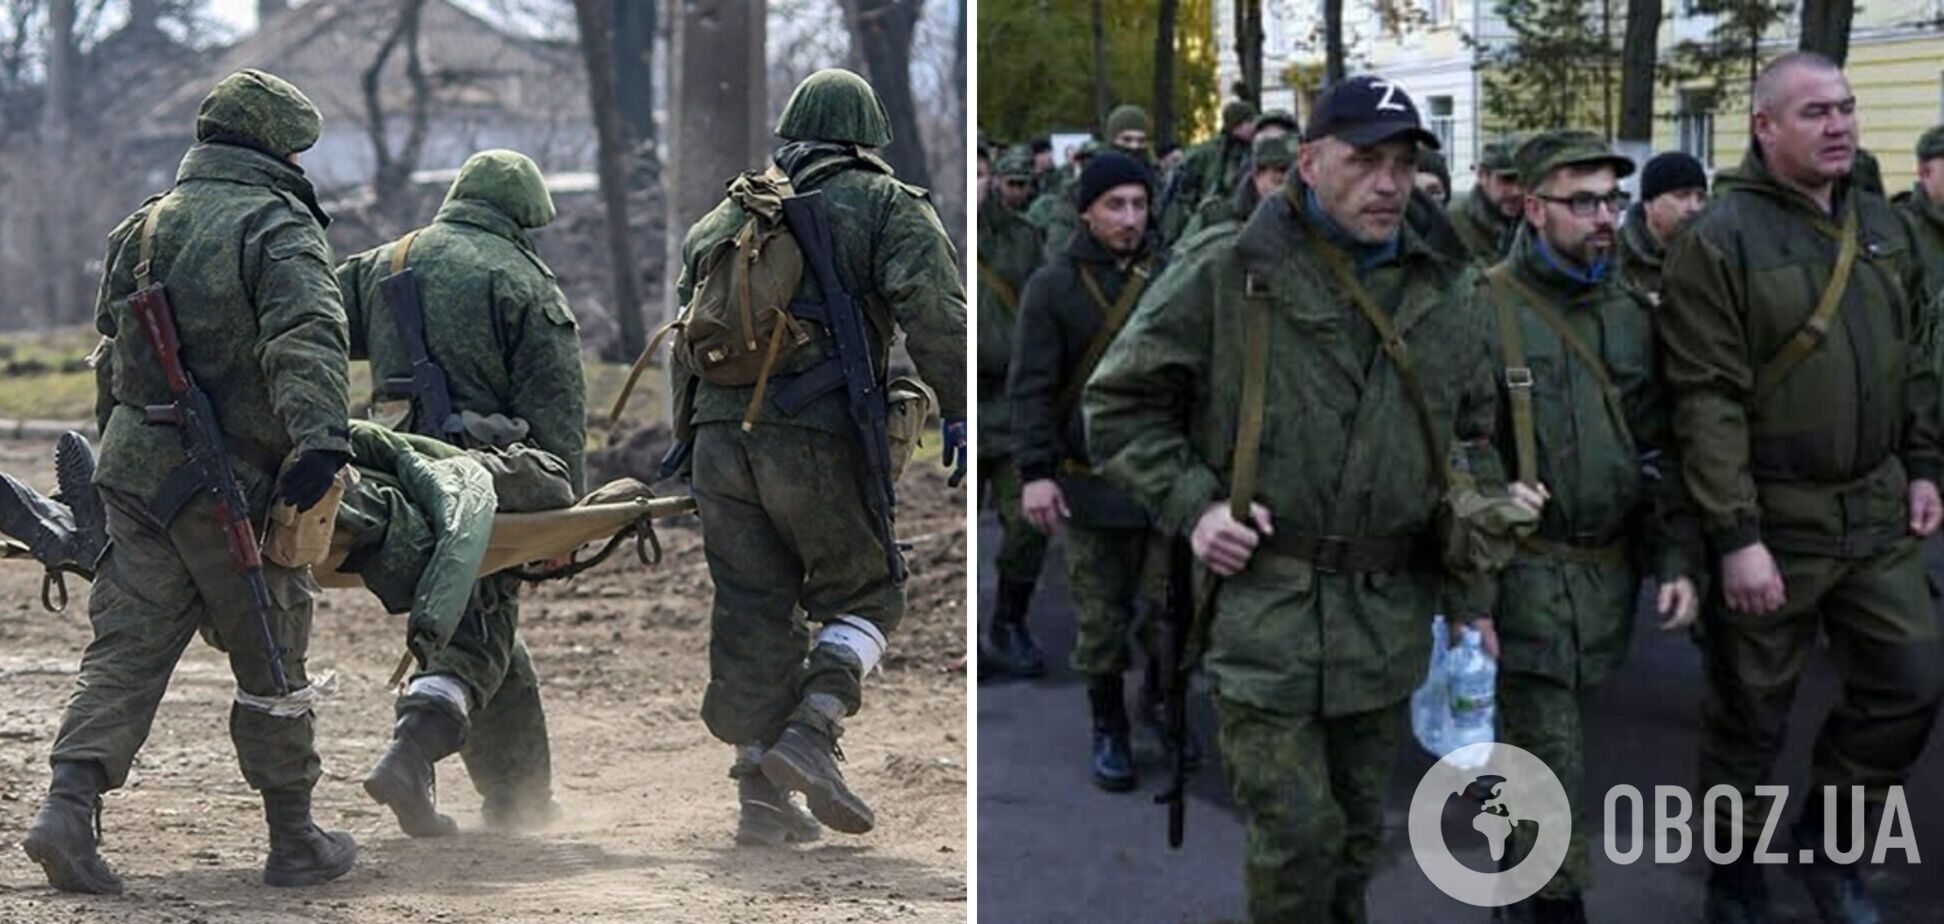 'Отправят меня обратно, таким, как есть': раненый оккупант пожаловался на работу ВВК в армии РФ. Перехват